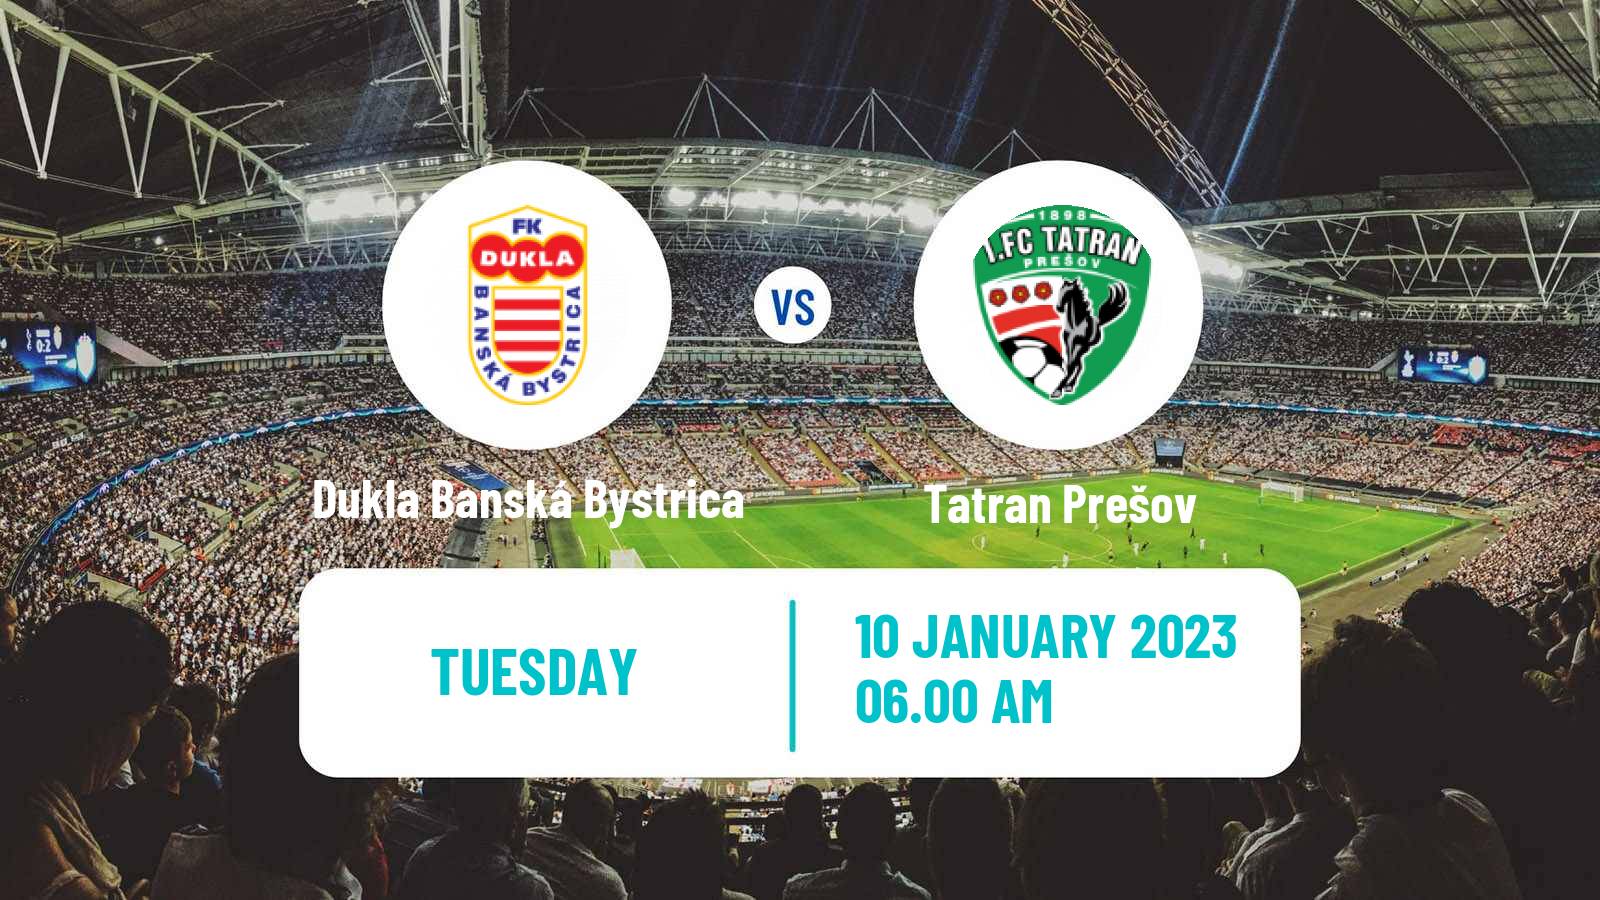 Soccer Club Friendly Dukla Banská Bystrica - Tatran Prešov